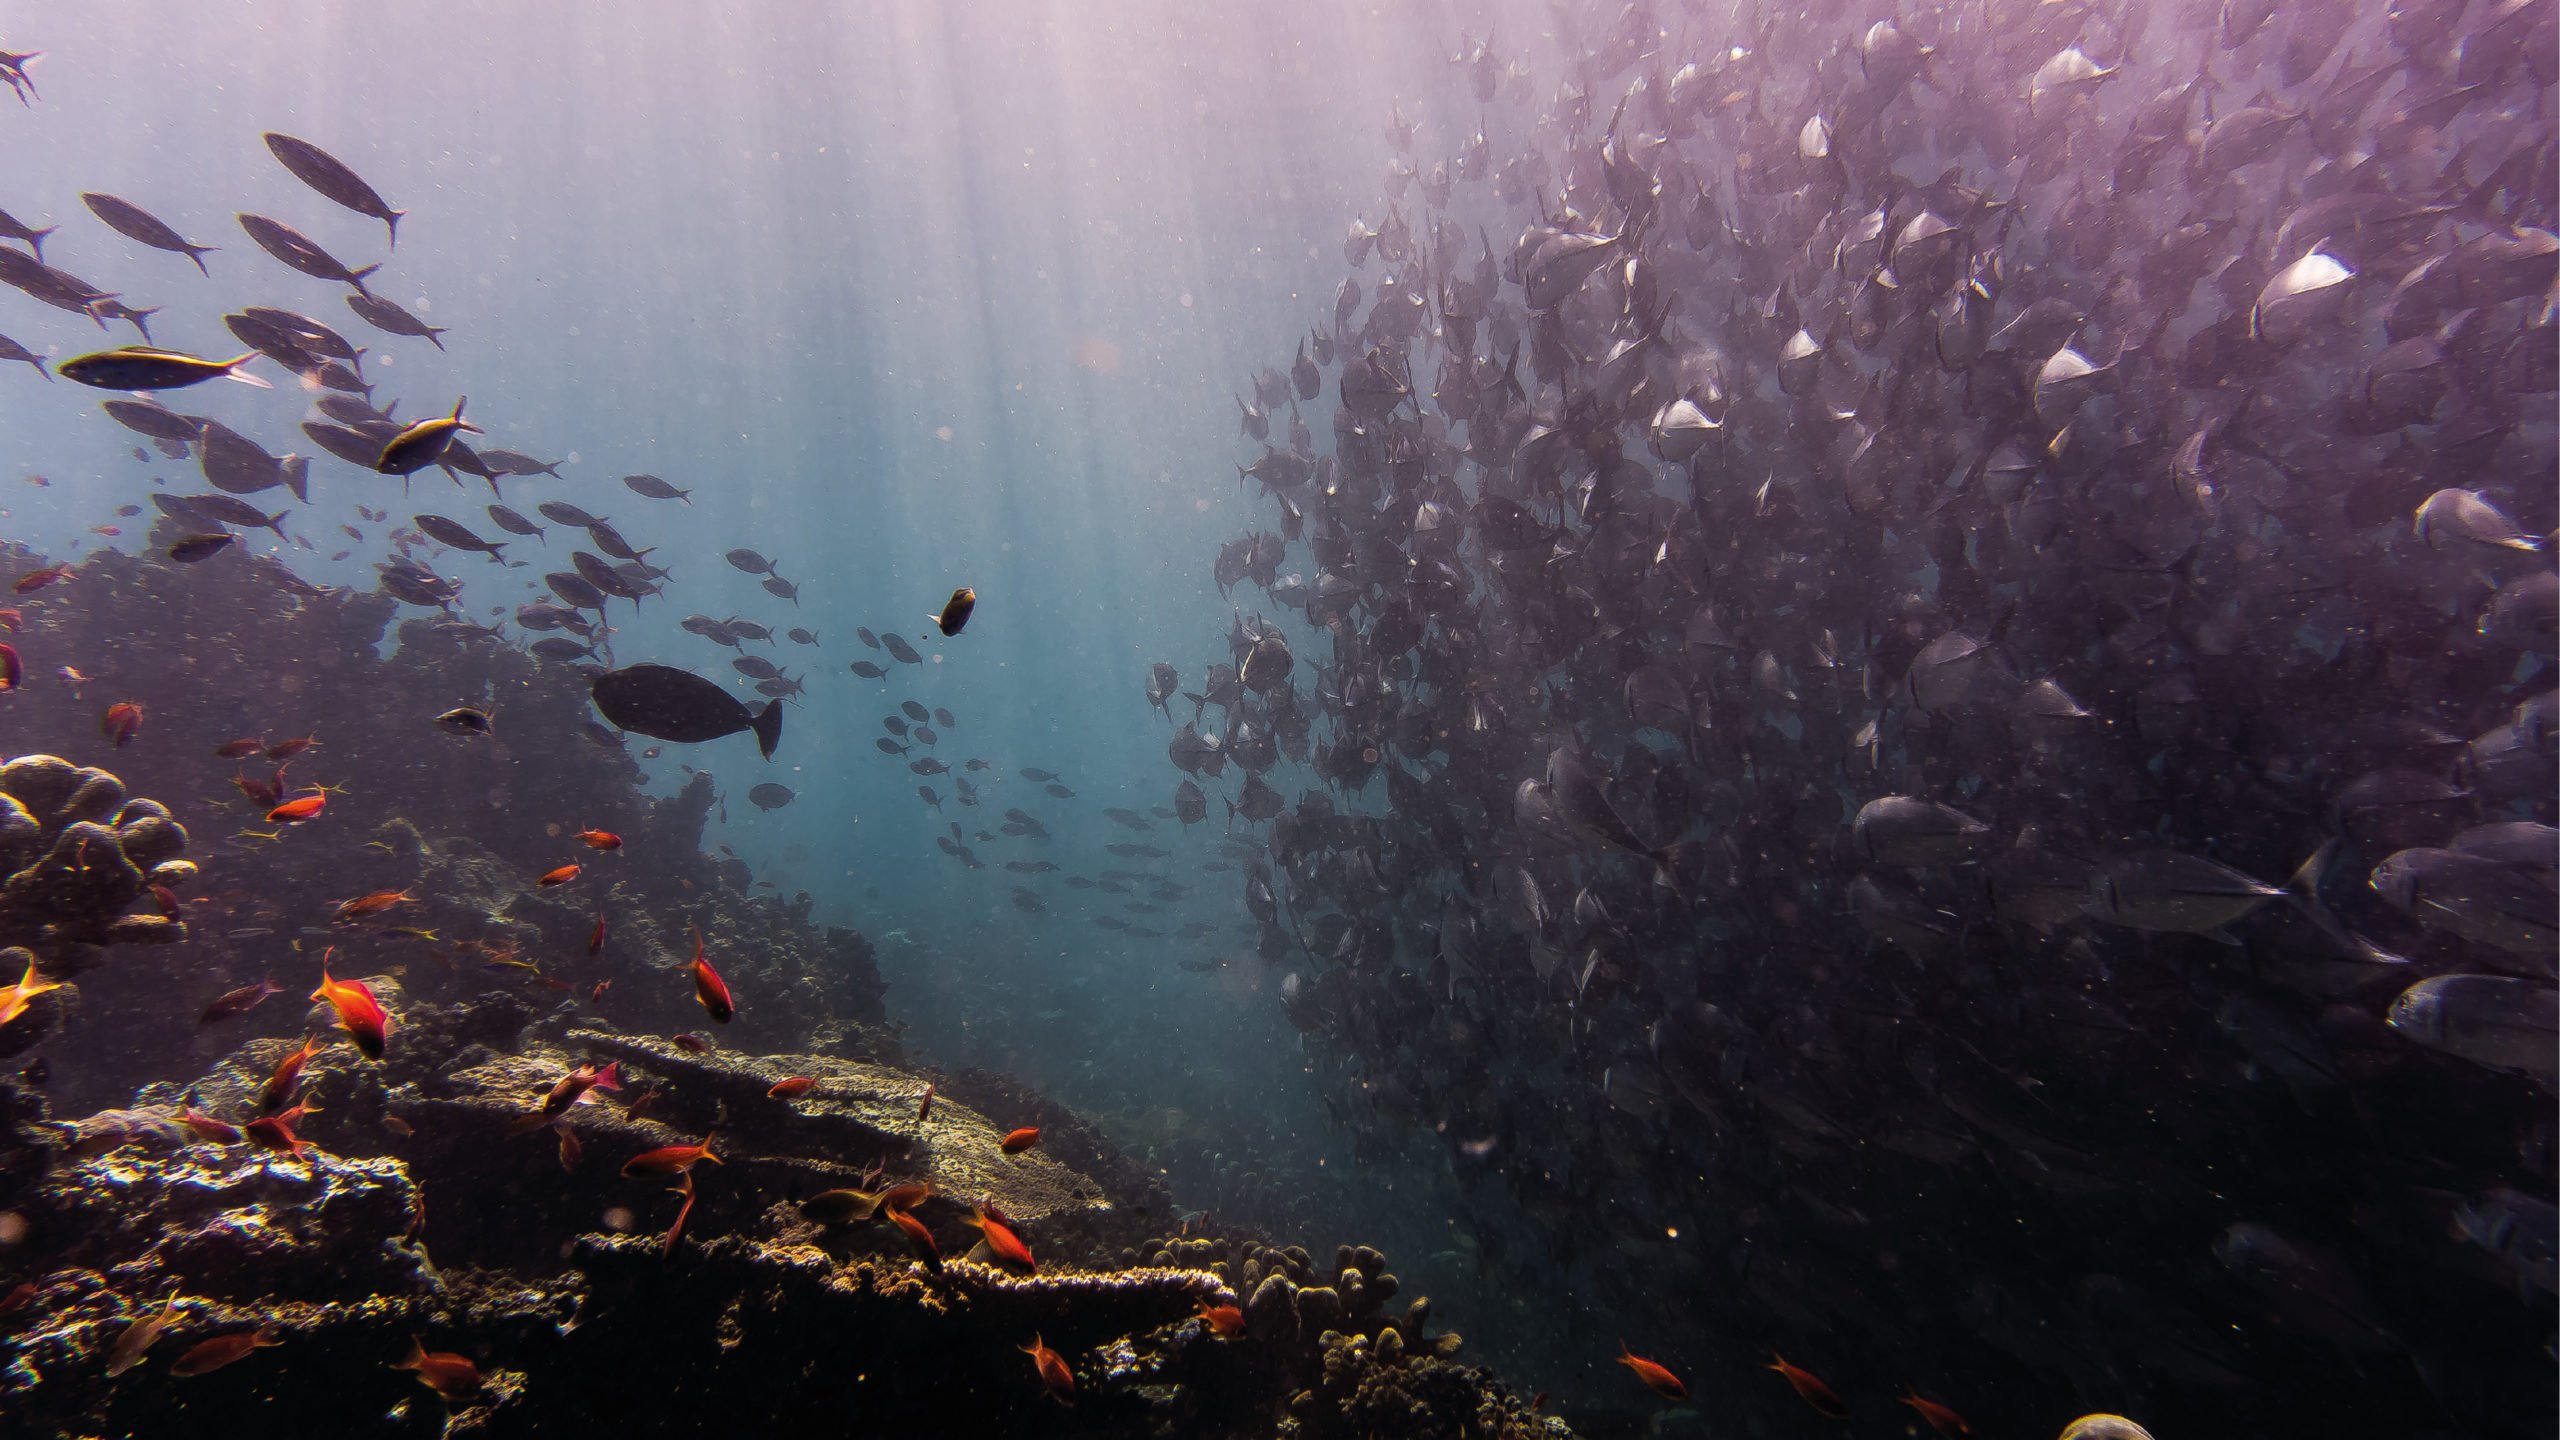 Contaminación con plásticos afecta al 88% de las especies marinas: WWF